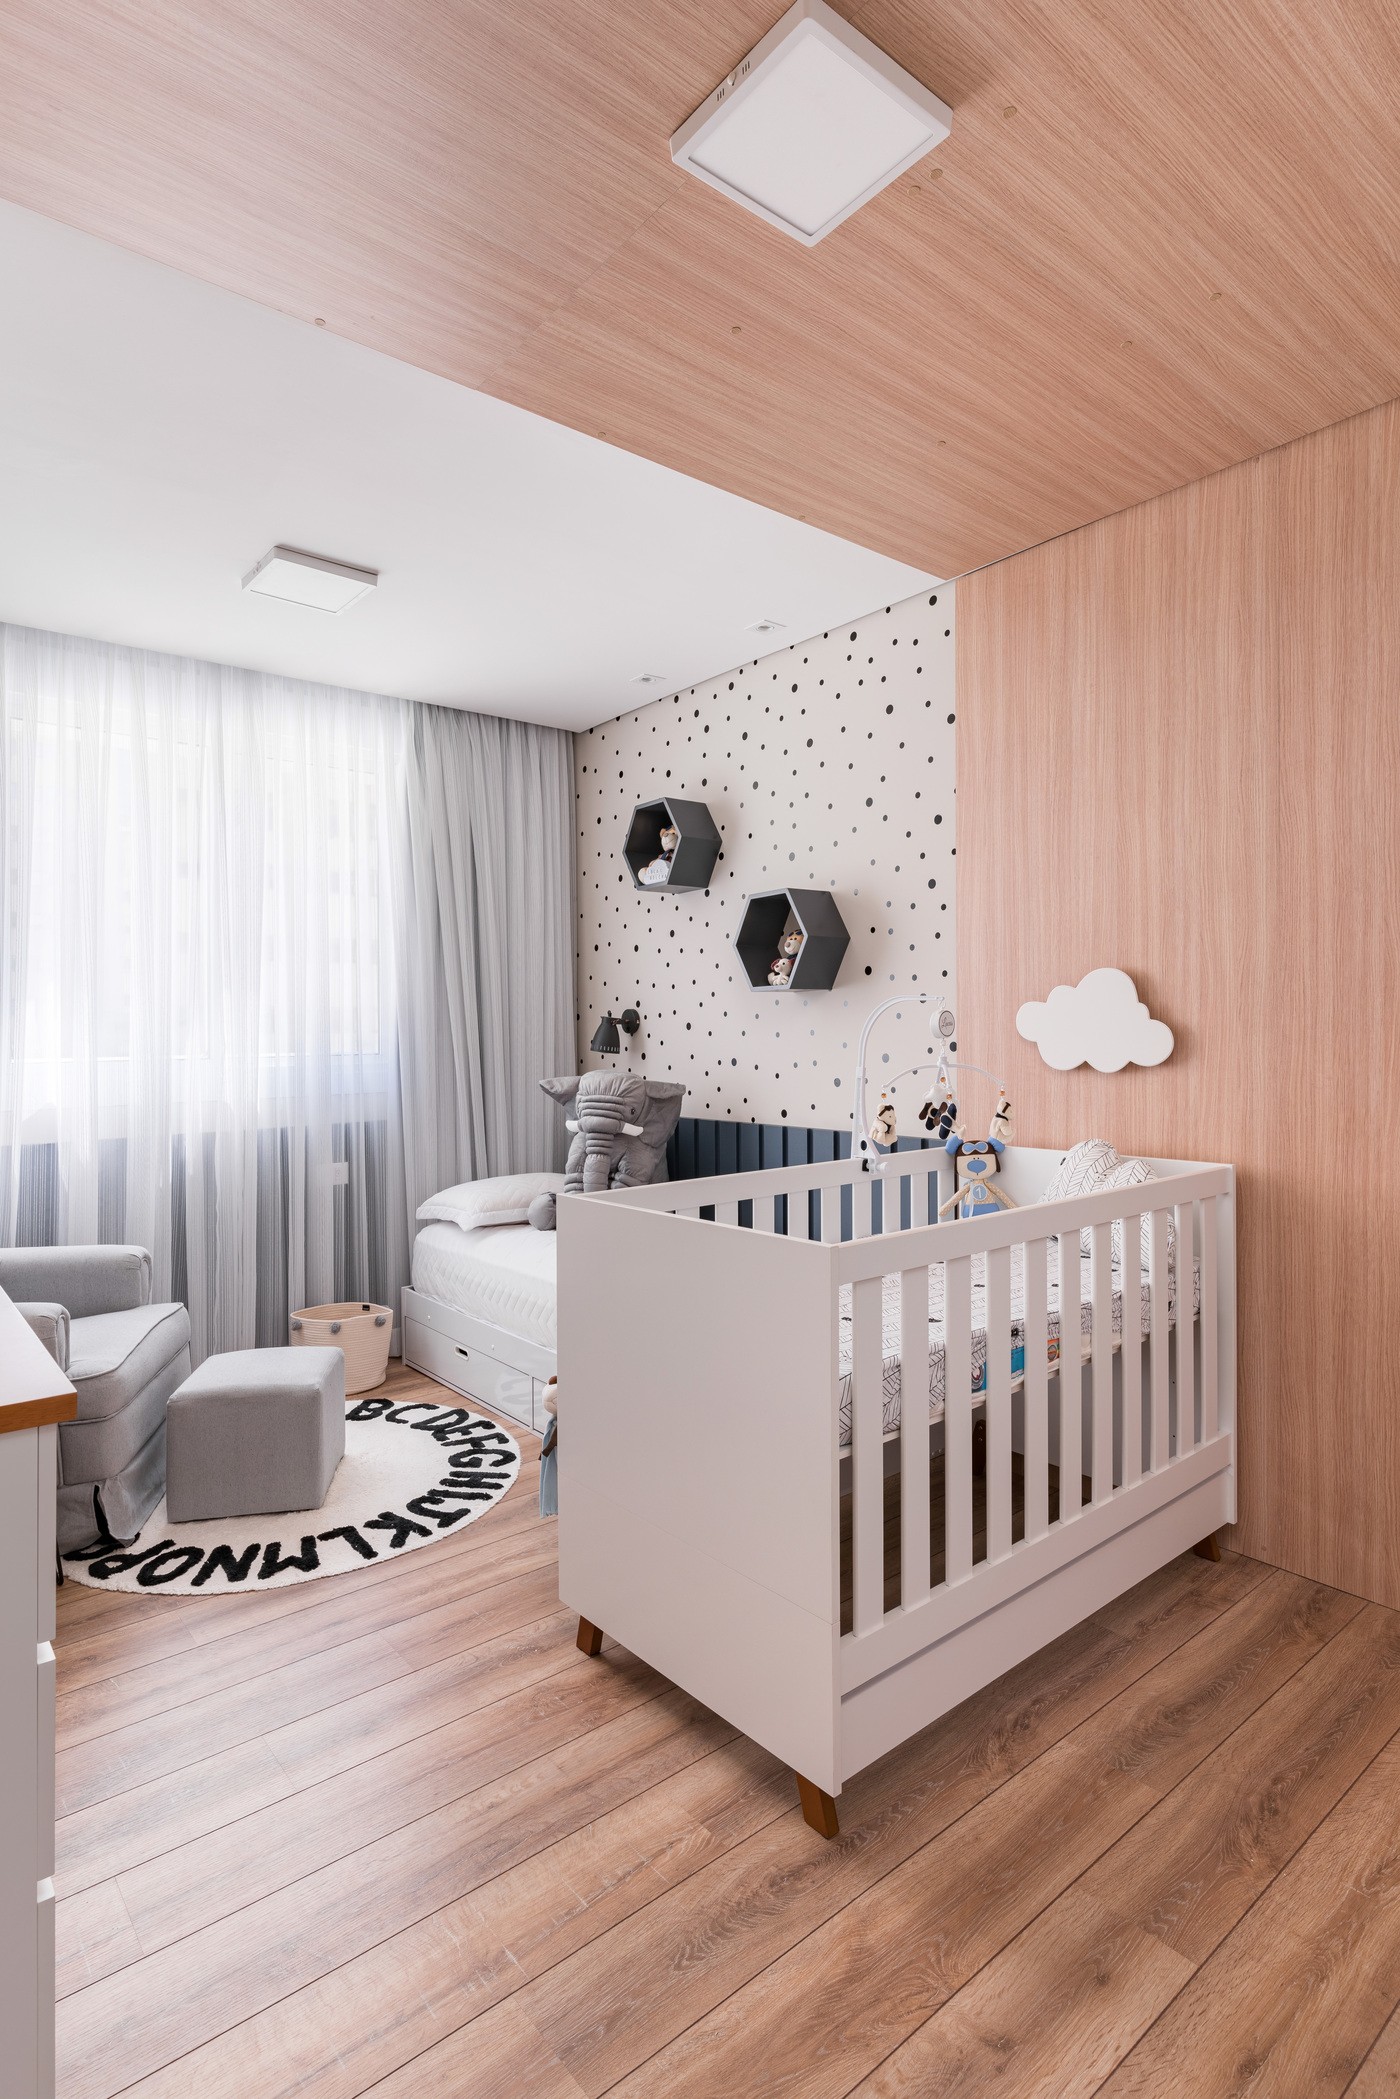 Décor do dia: quarto de bebê com madeira e base neutra (Foto: Kadu Lopes)